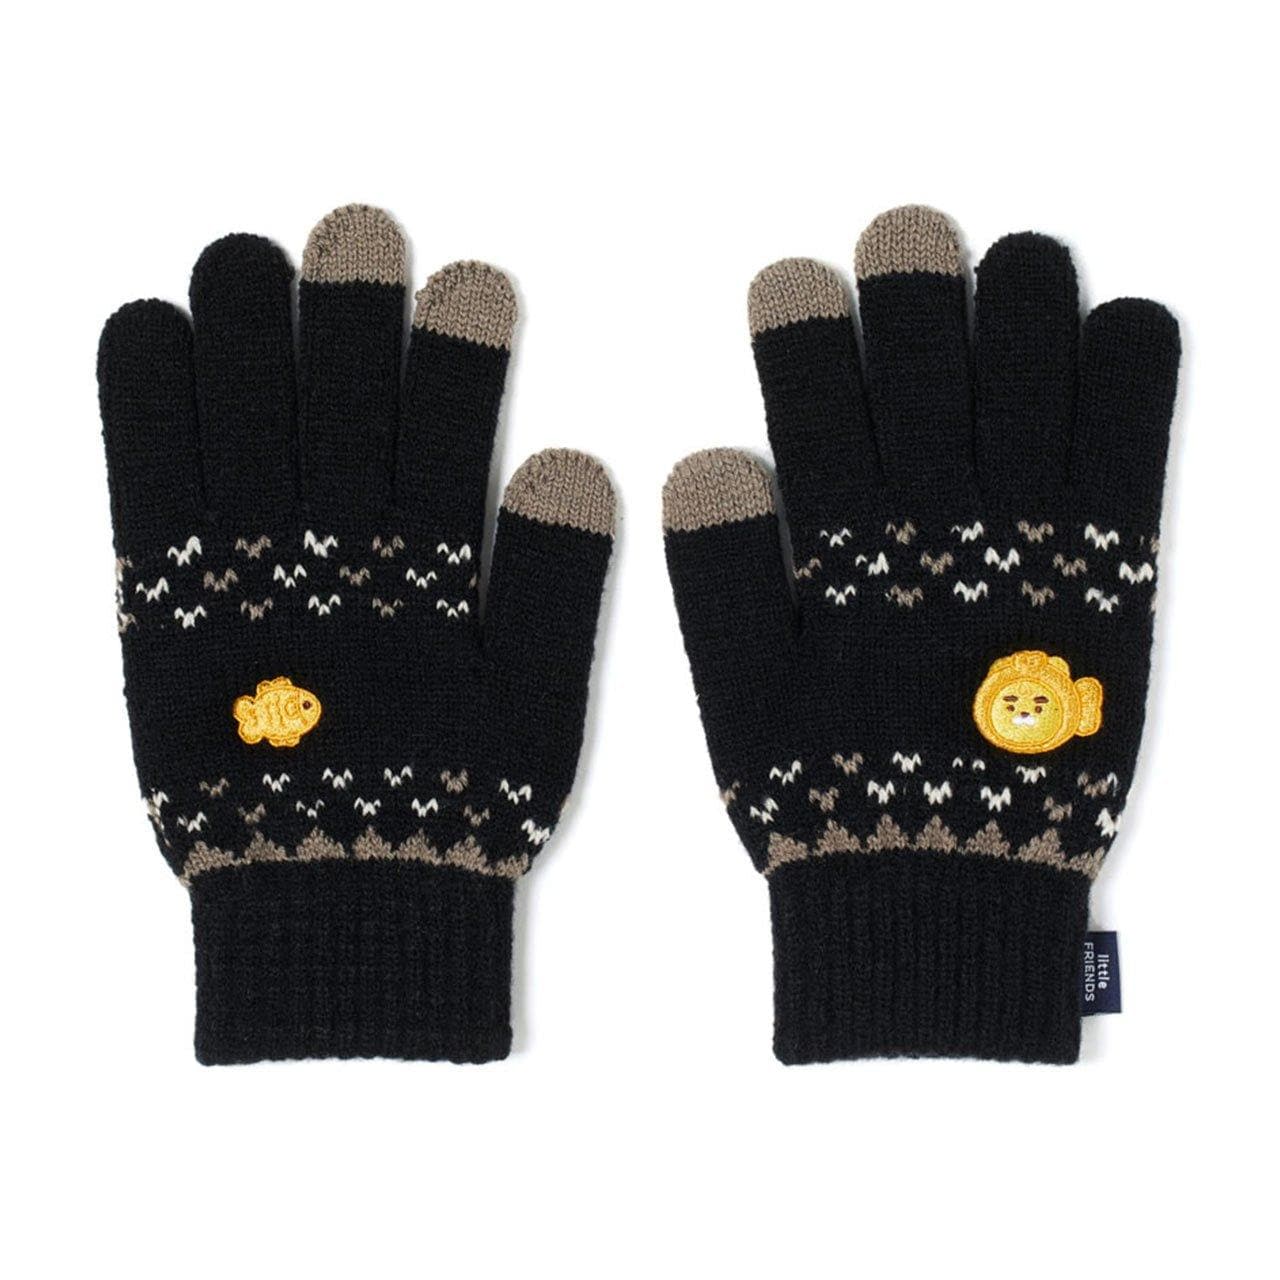 Touch Gloves - Daebak